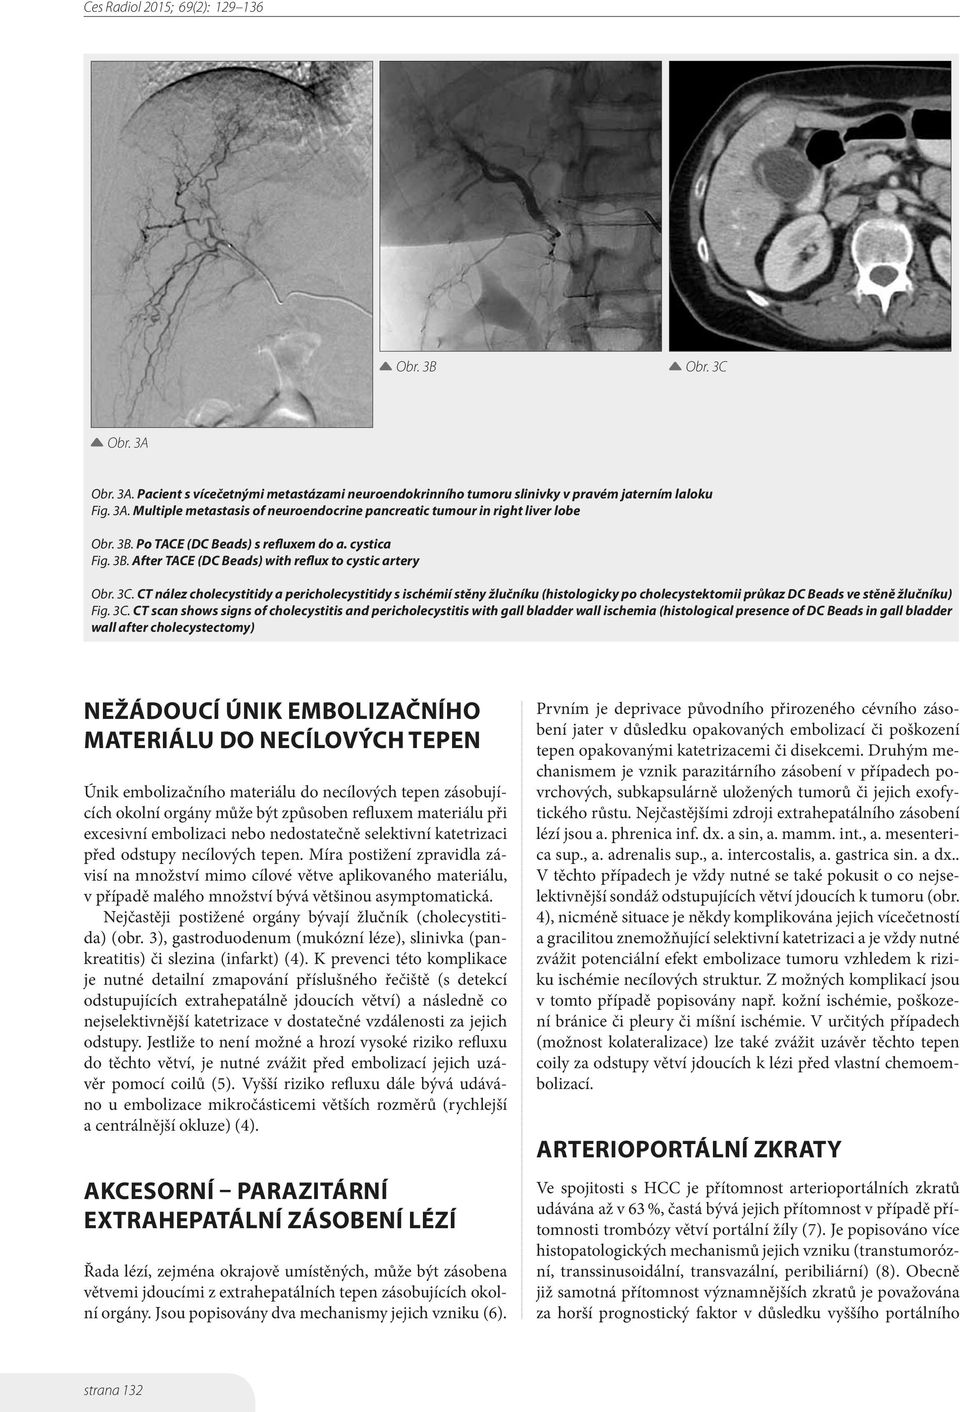 CT nález cholecystitidy a pericholecystitidy s ischémií stěny žlučníku (histologicky po cholecystektomii průkaz DC Beads ve stěně žlučníku) Fig. 3C.